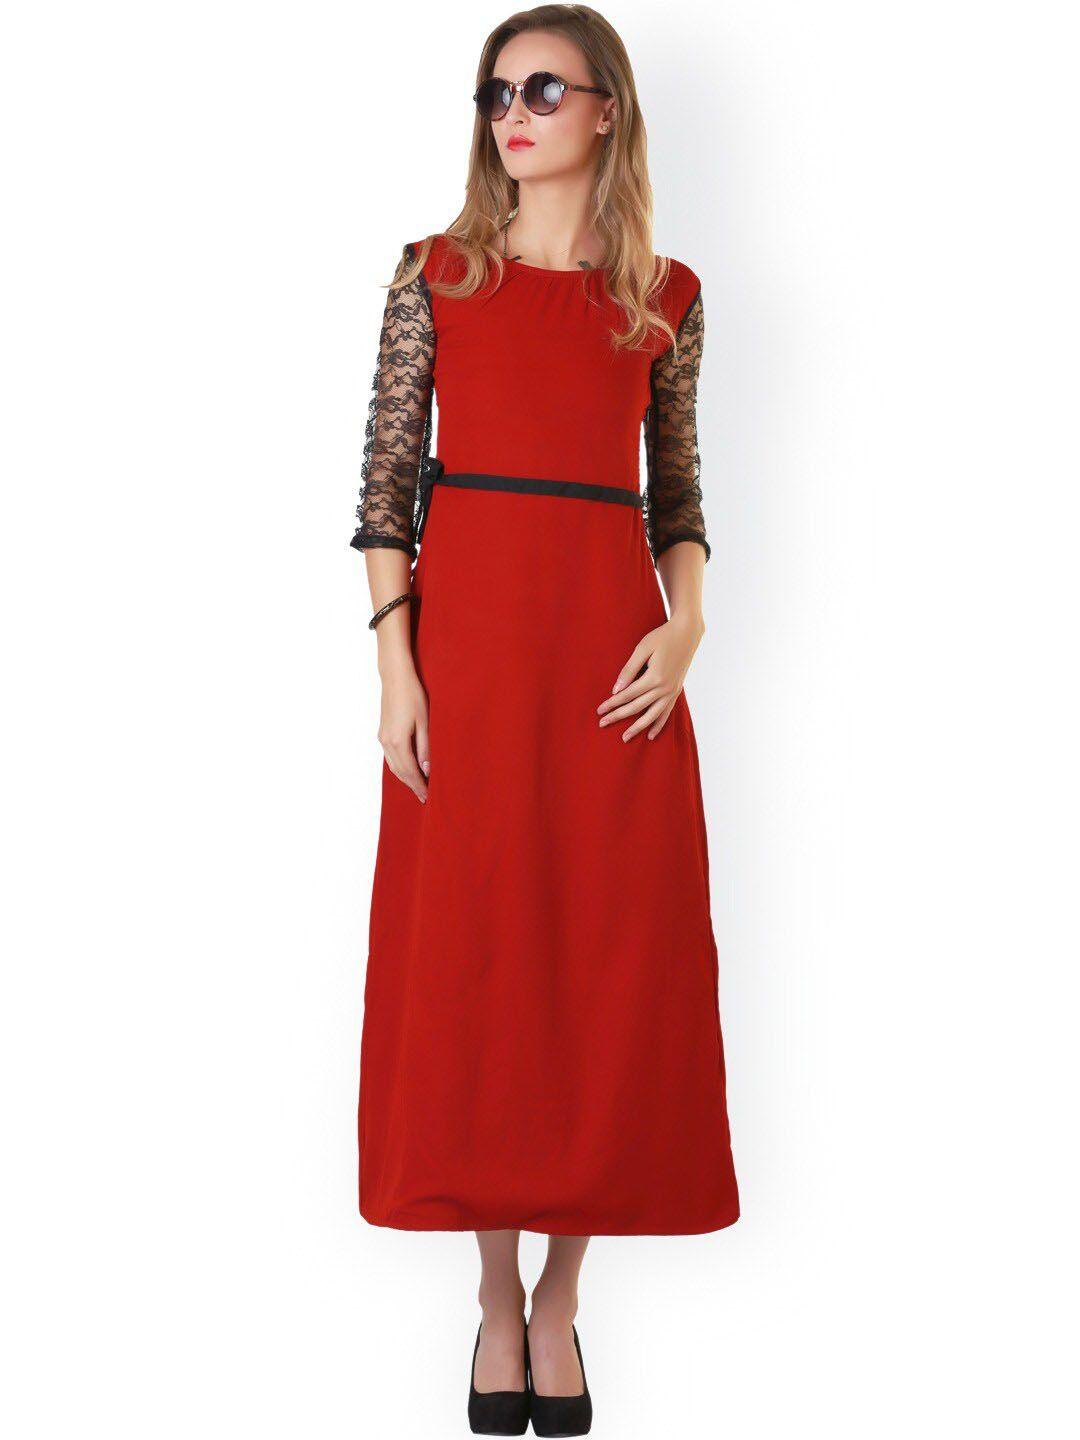 baesd-georgette-self-design-round-neck-a-line-midi-dress